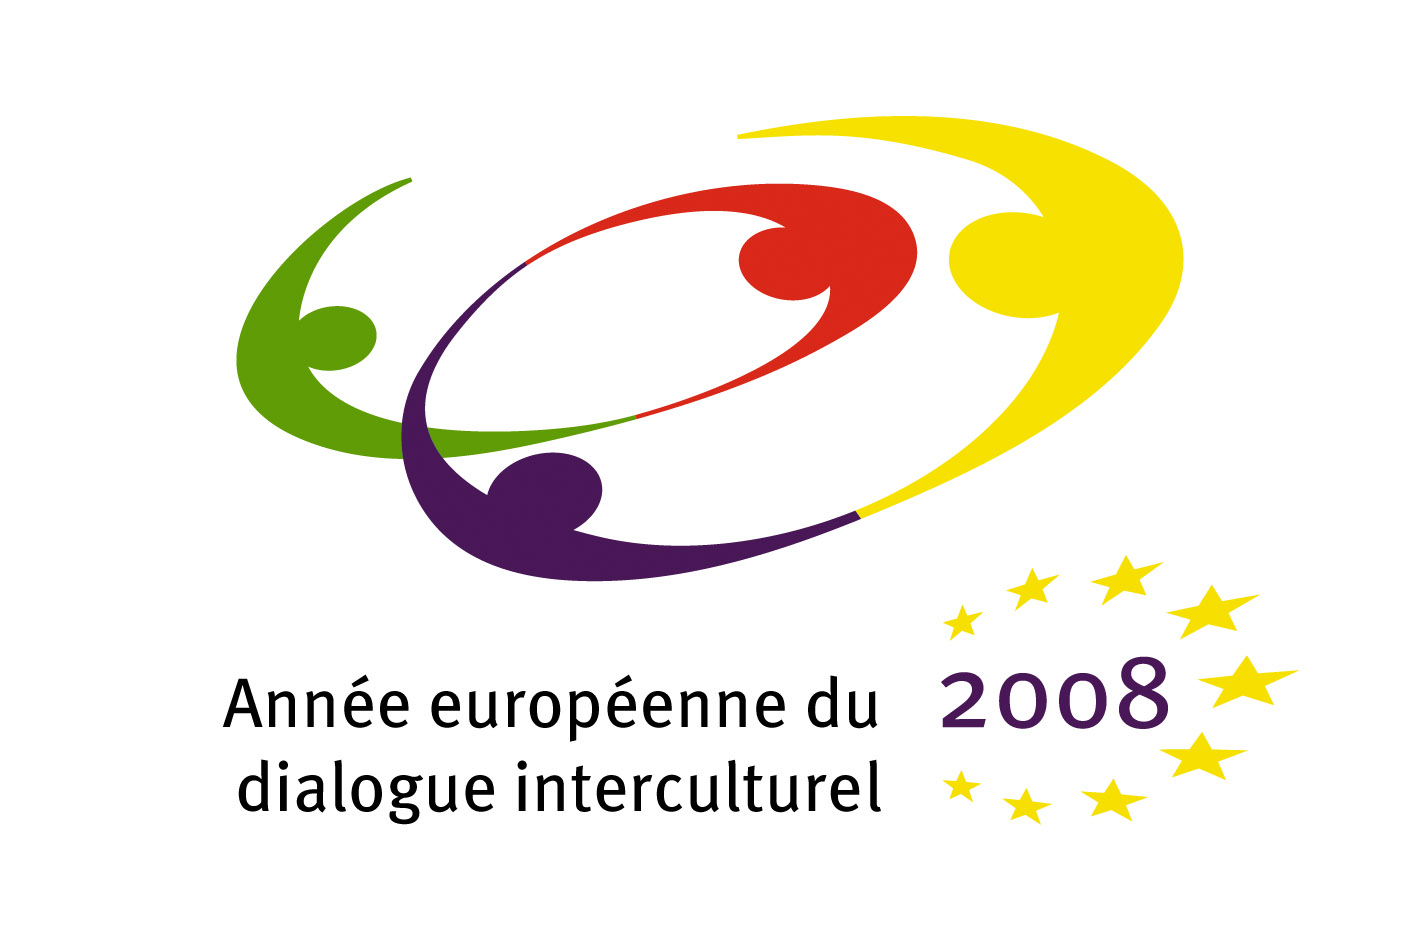 2008 Année européenne du dialogue interculturel